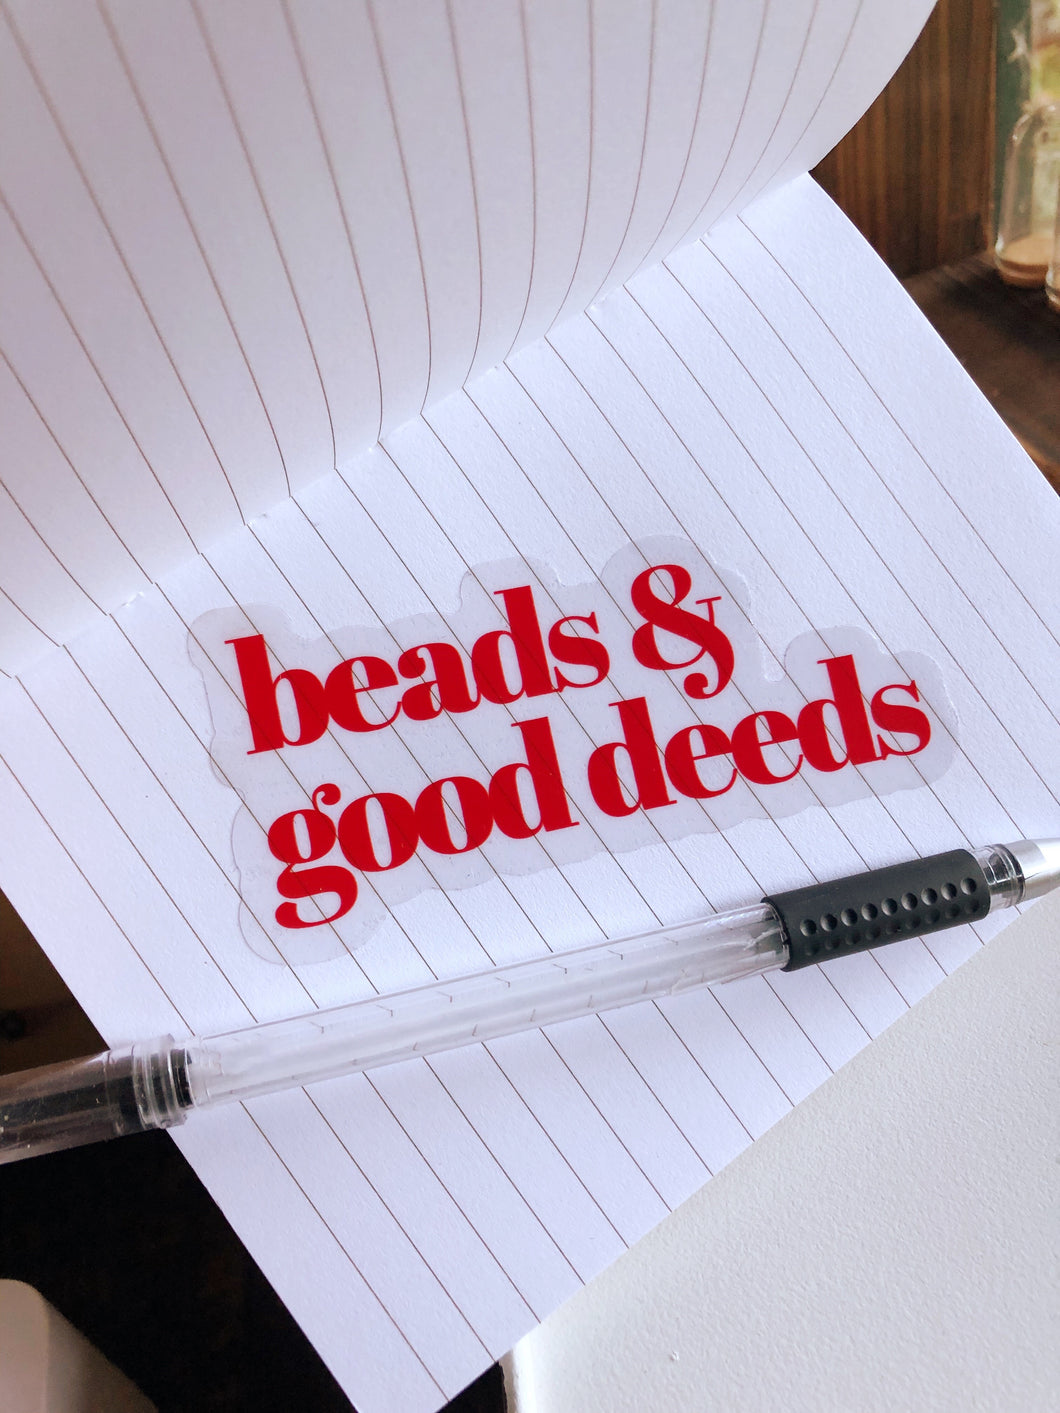 beads & good deeds transparent/red sticker